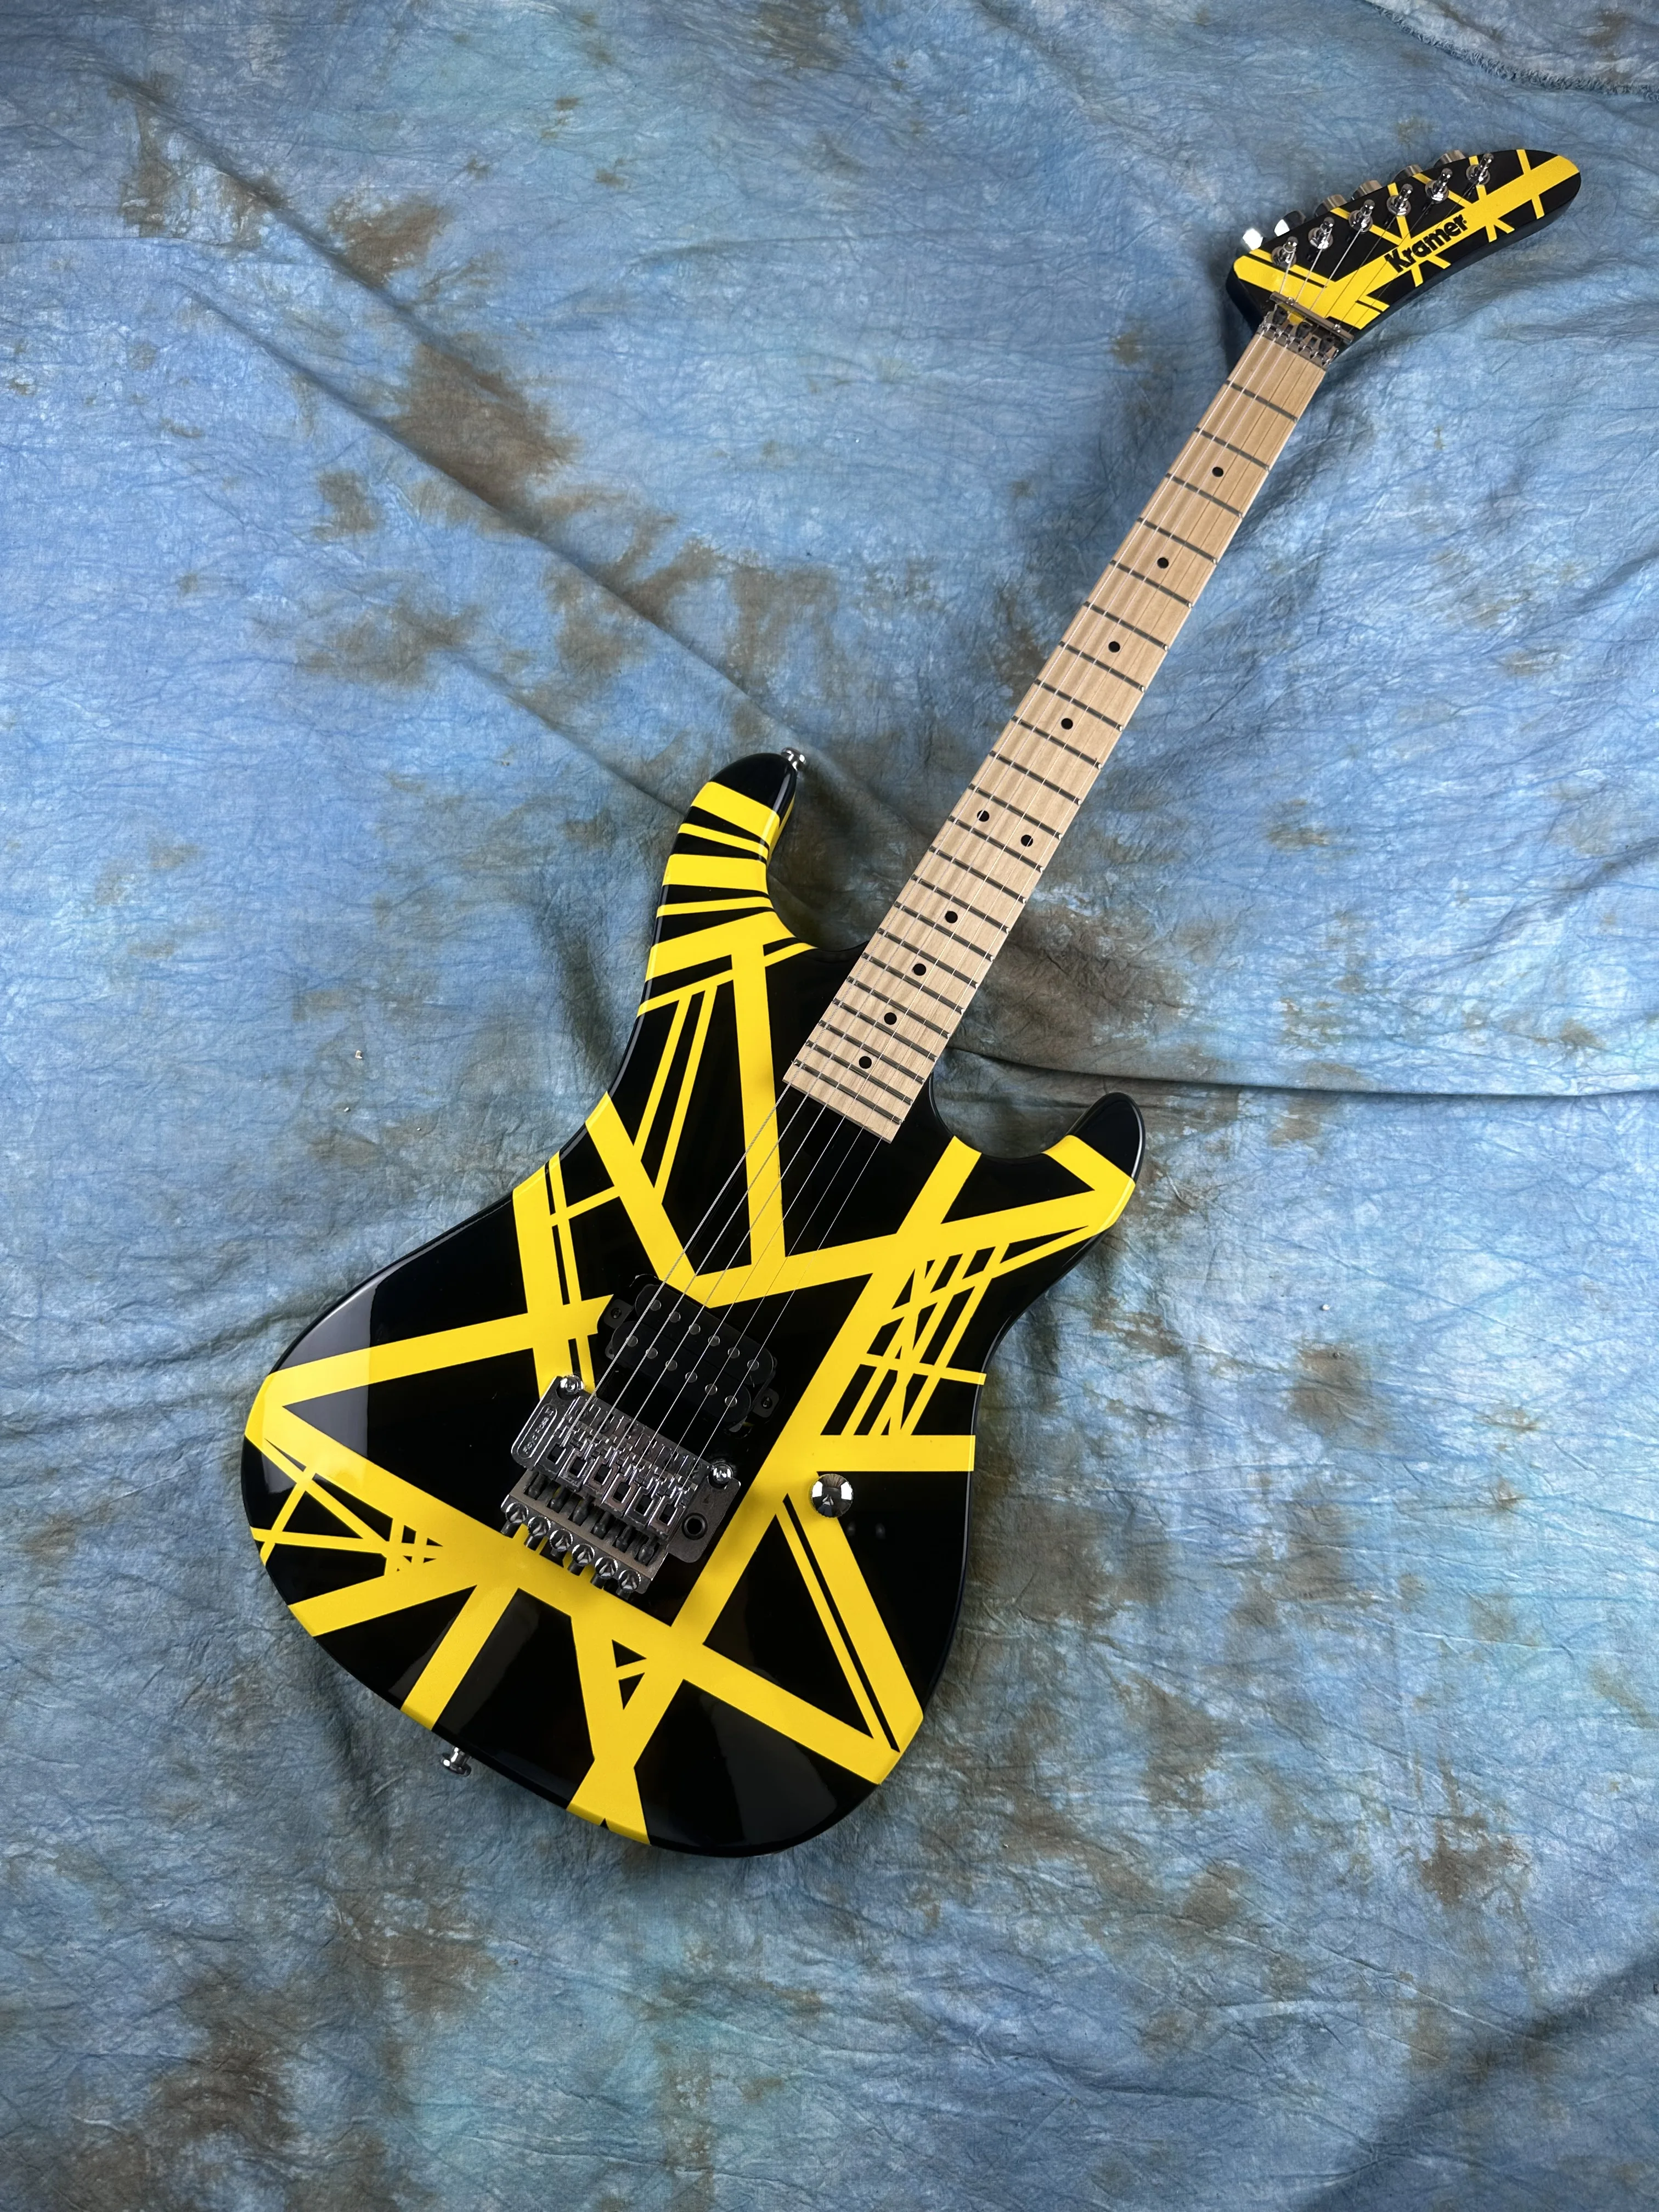 

5150 электрическая гитара, классические желтые черные желтые полосы, Альдер корпус, канадский клен сэндвич шея и фингерборд, в наличии, f